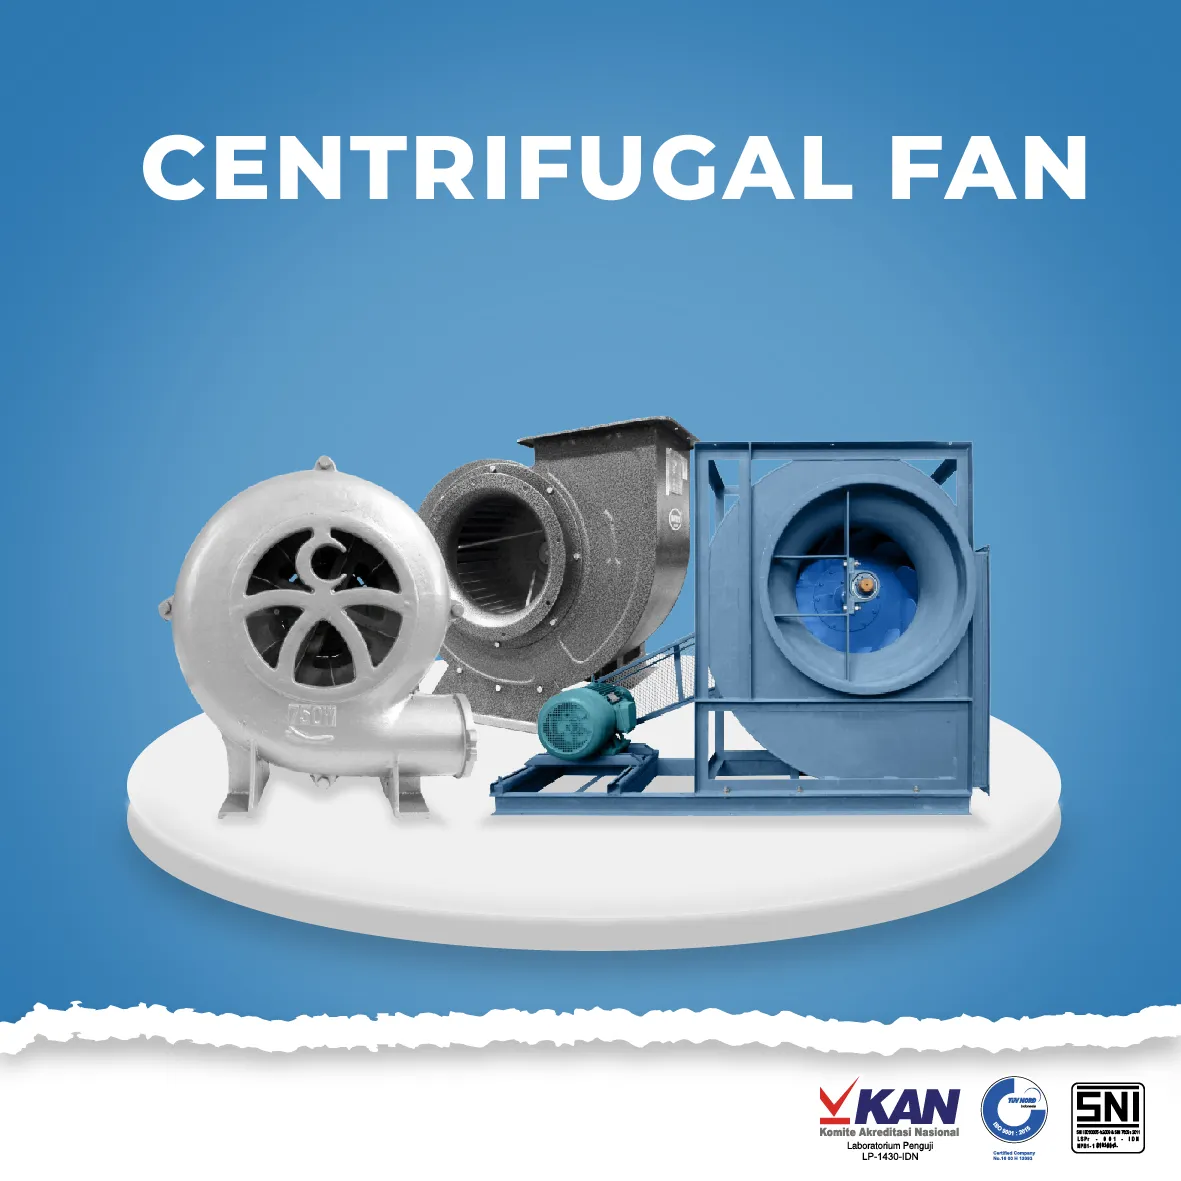  Centrifugal Fan centrifugal fan fan wheel kipas sirocco 01